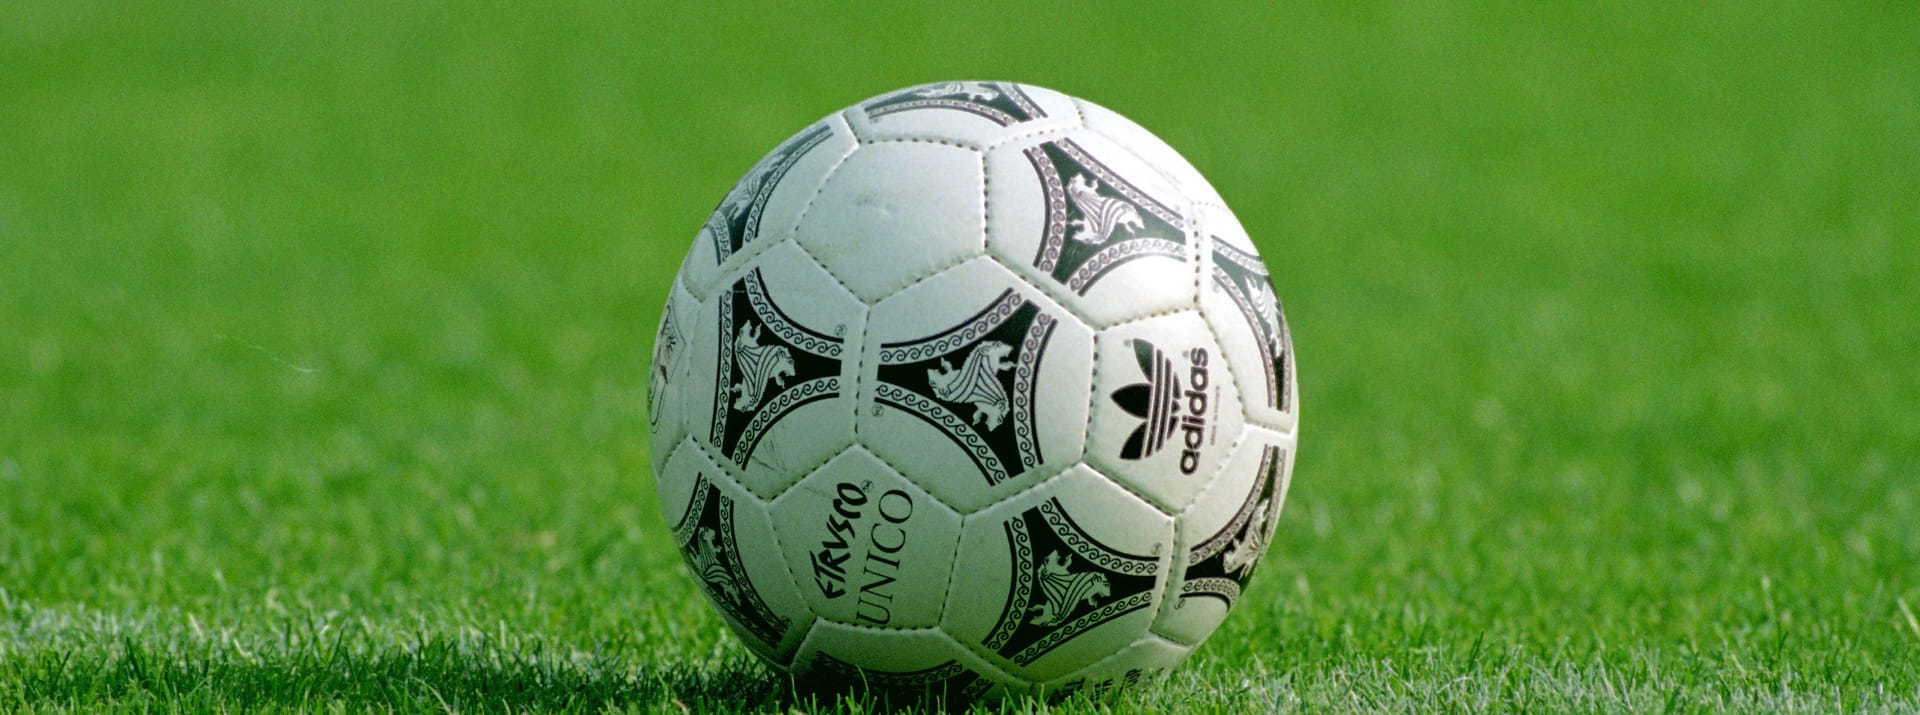 EM 1992: Der Adidas "Etrusco Unico" war der offizielle Spielball der Europameisterschaft 1992 in Schweden. In Deutschland ist er allerdings bekannter als der Ball der Weltmeisterschaft 1990 in Italien. Bei dieser wurde das Modell ebenfalls verwendet.